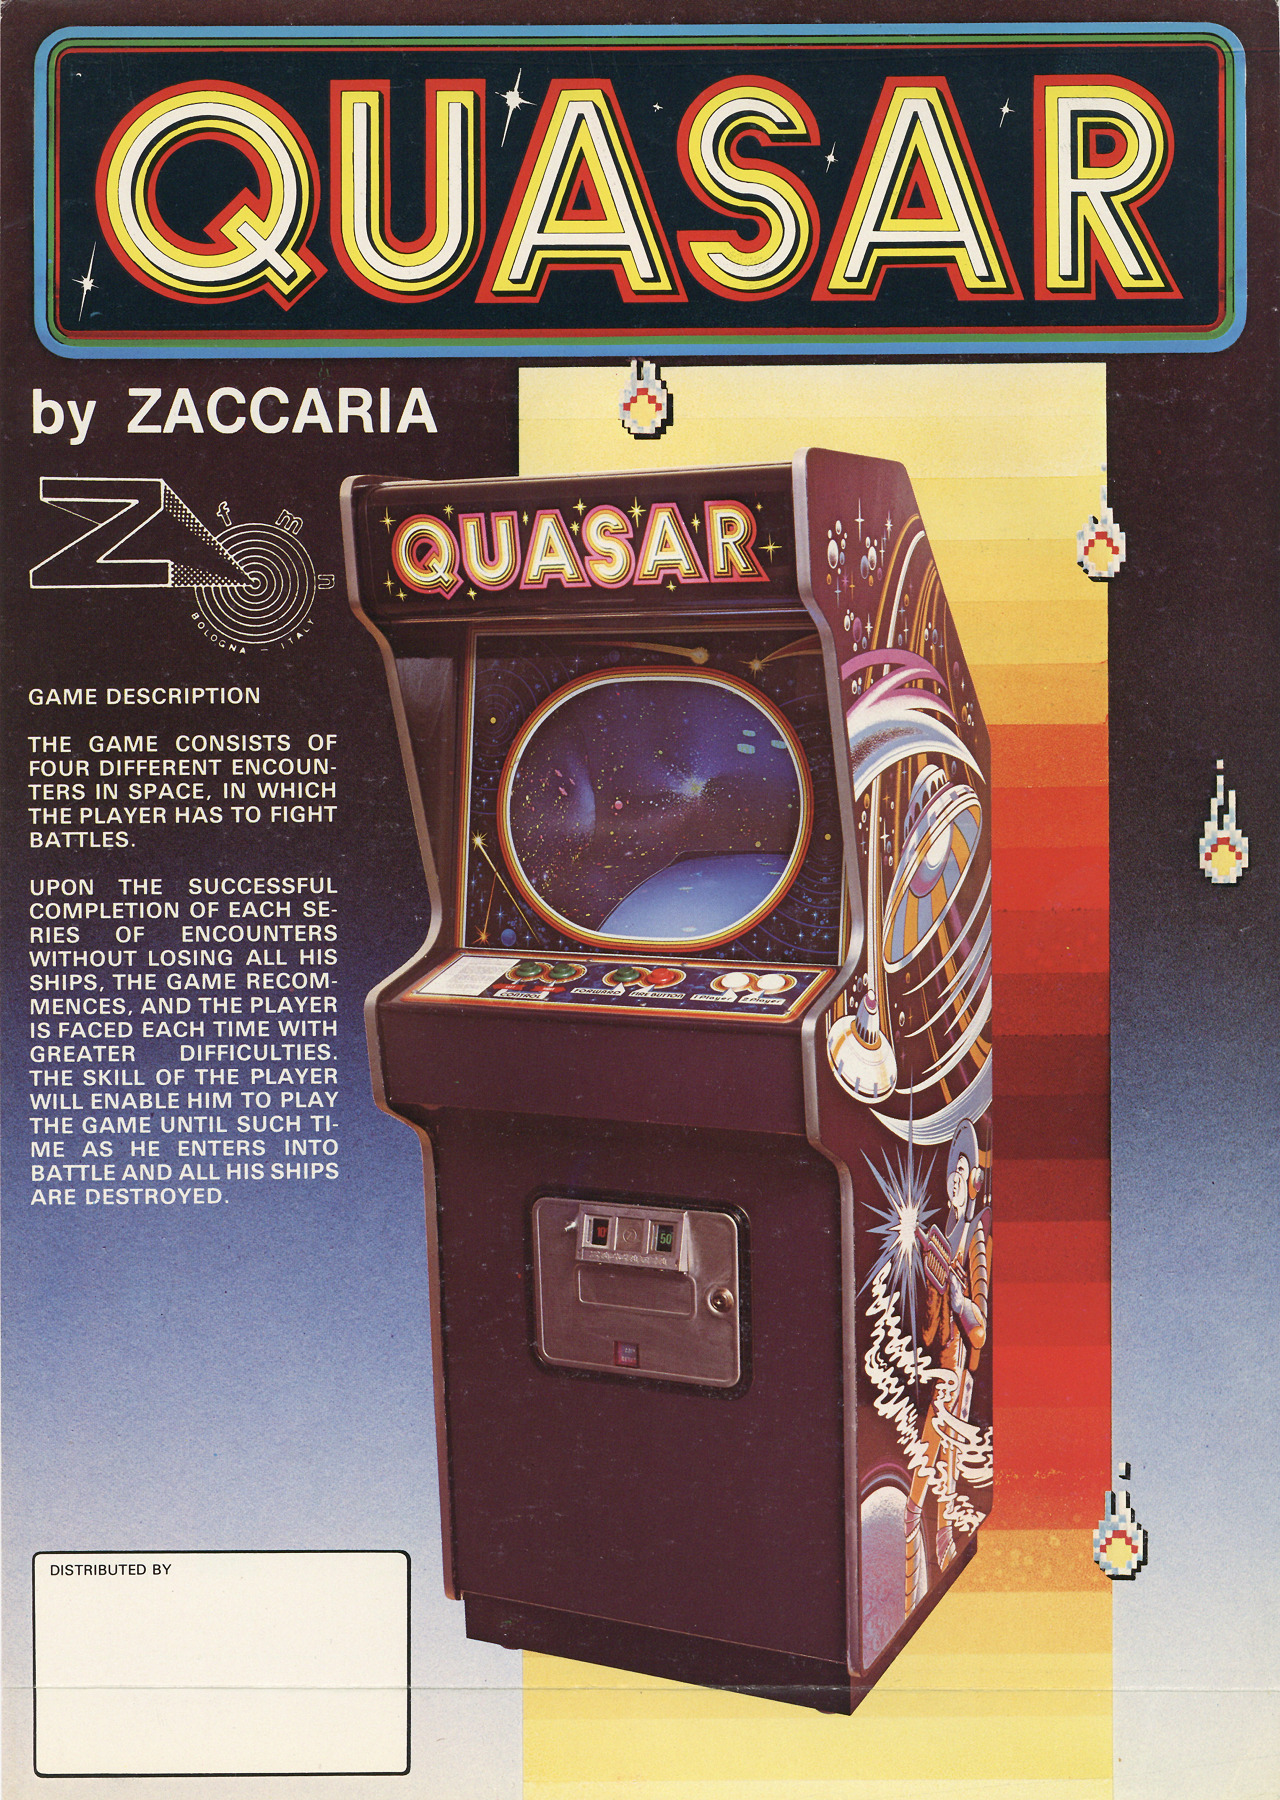 quasar jogos – Página 4 – Quasar Jogos